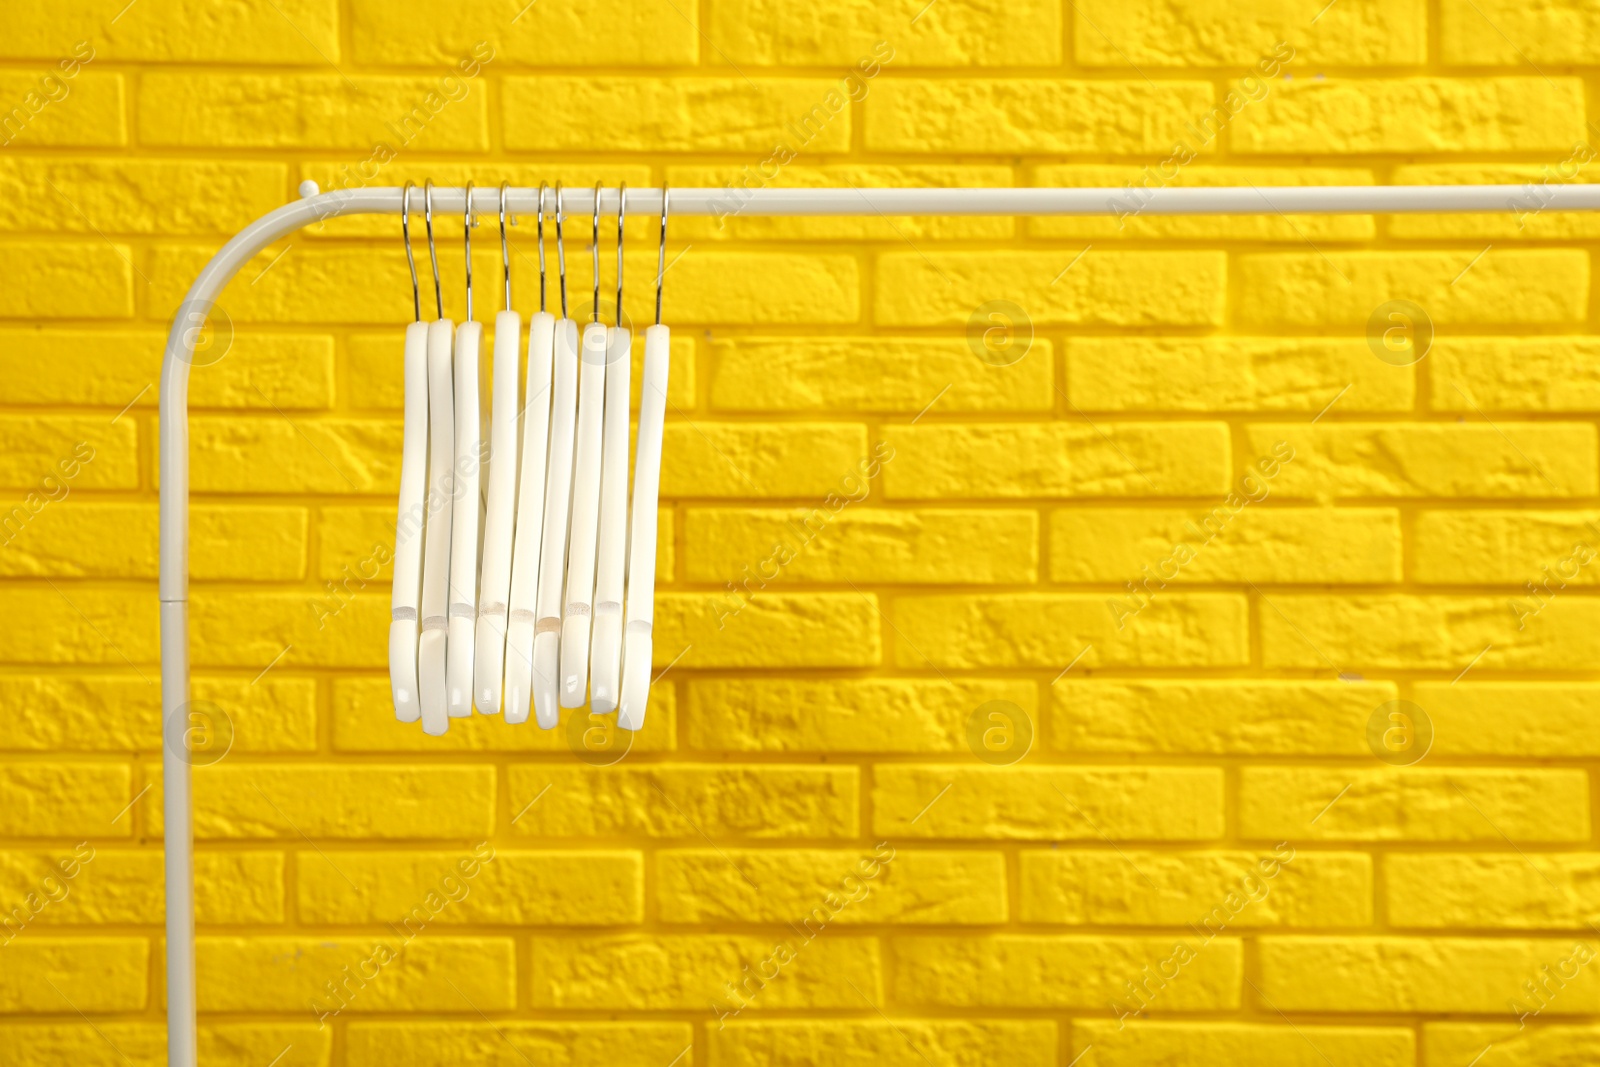 Photo of Wardrobe rack with many hangers near yellow brick wall